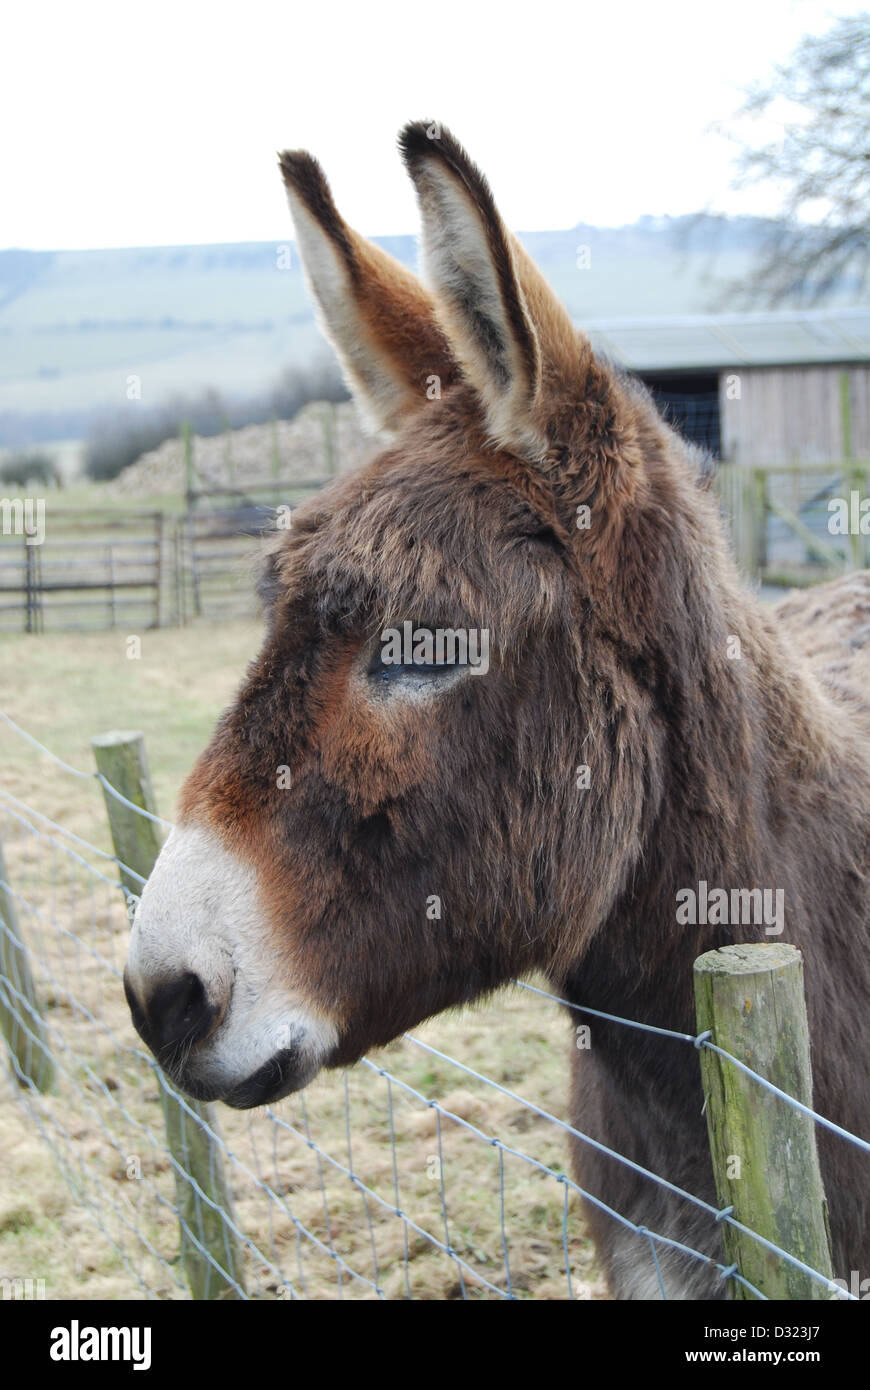 Ein Esel in einem Streichelzoo oder Bauernhof Blick über den Zaun an der Kamera Alarm und Aufmerksamkeit, die in ein Feld offen im freien Stift Stockfoto